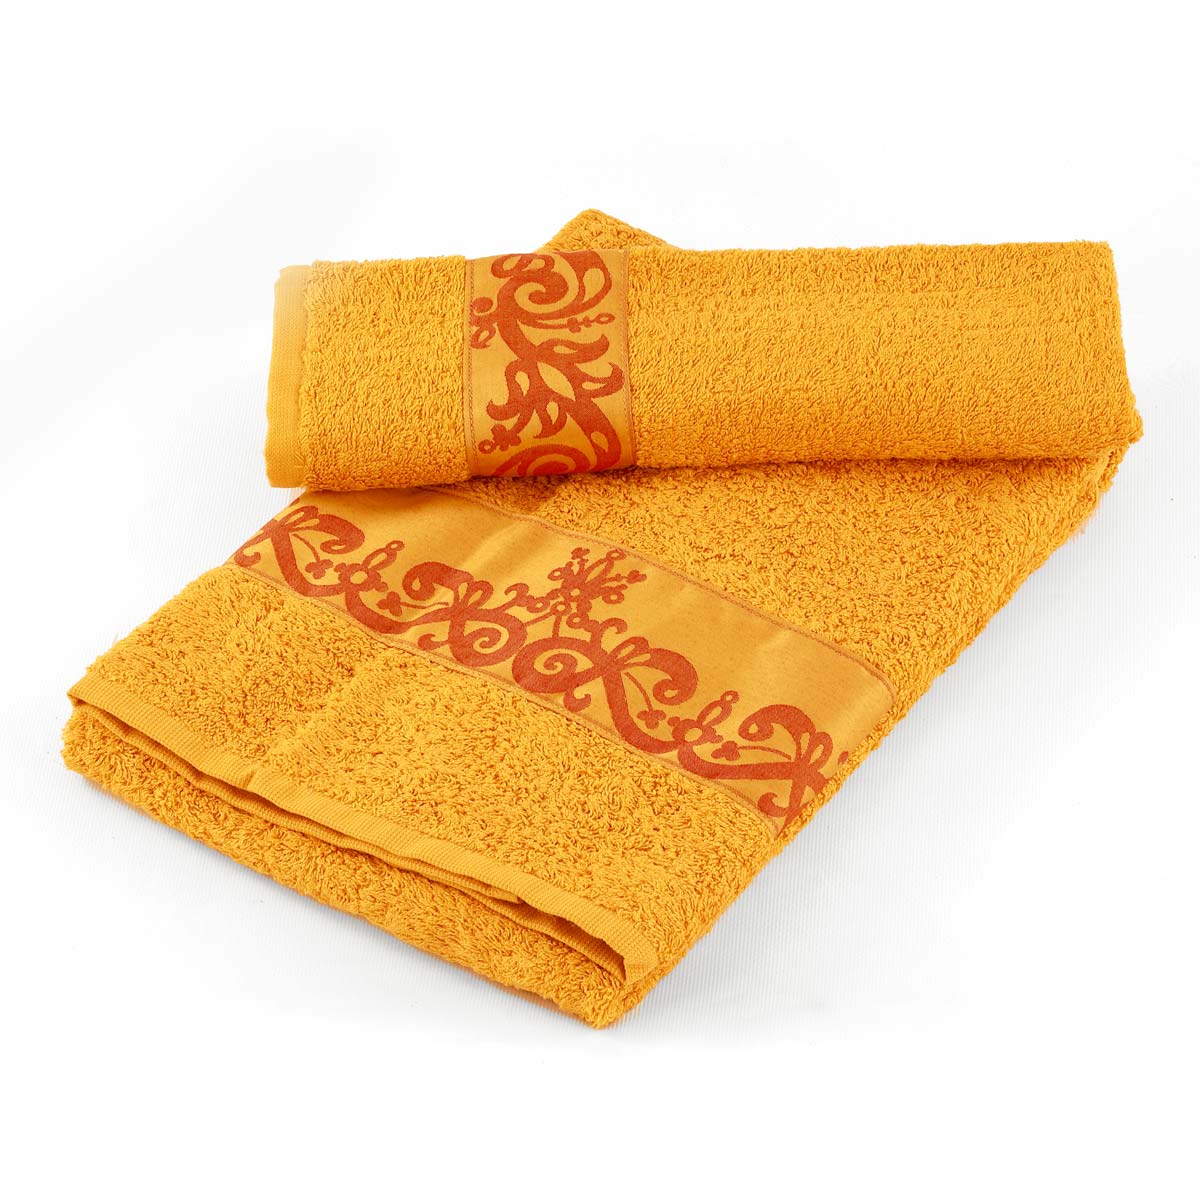 Coppia asciugamani da bagno in spugna di colore senape con balza in raso - Marabò